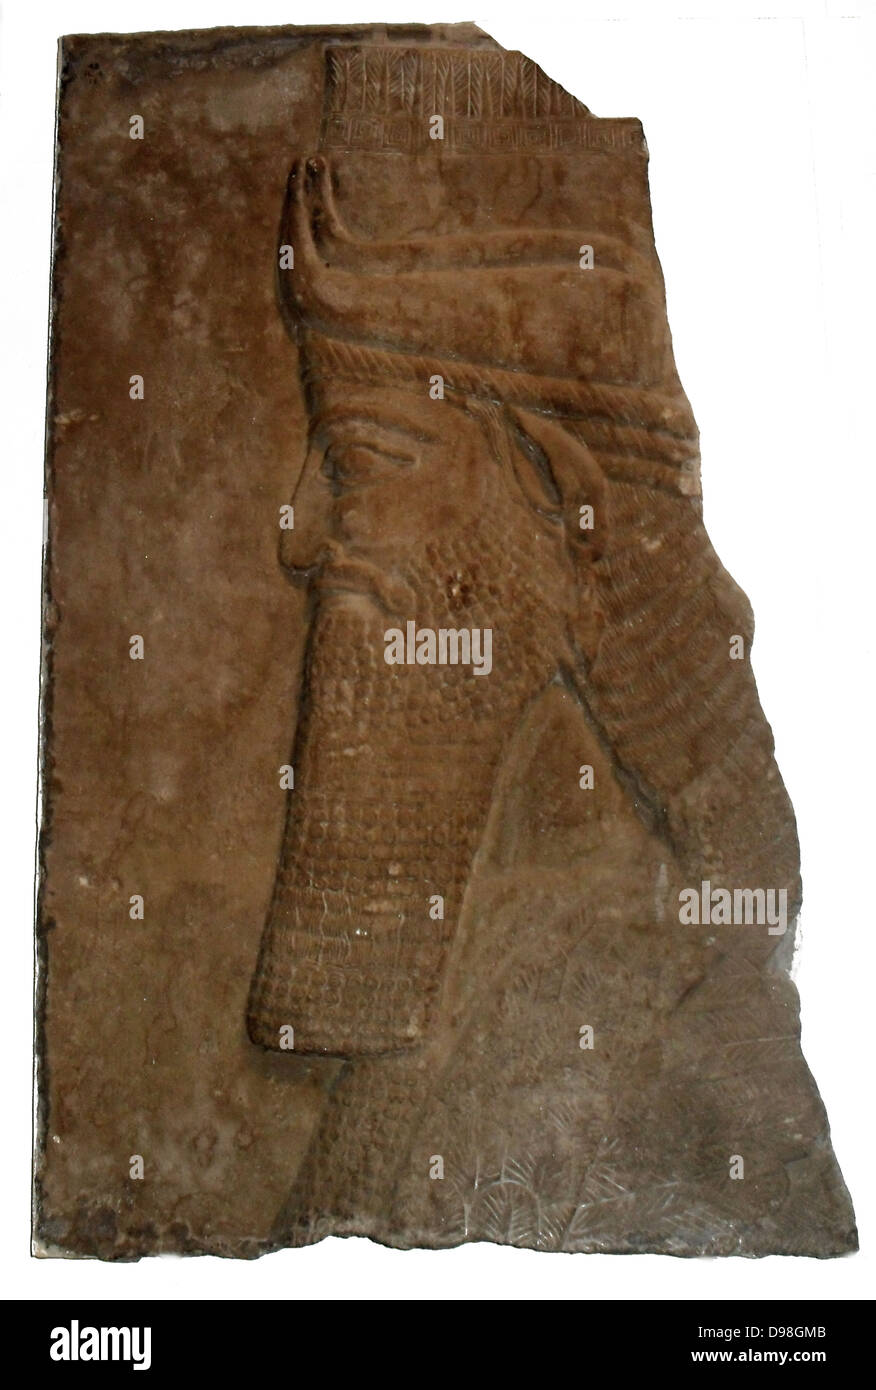 Cabeza de Toro alado. Asiria, alrededor de 728 AC. De Nimrud, Palacio Central. Este fragmento de un humano con cabeza de toro alado, de Tiglat-pileser III's Palace, está esculpida en bajorrelieve como un muro-panel. Hay un marcado contraste con las cifras colosales, muy en alto relieve, tanto de los períodos anteriores y posteriores. Foto de stock